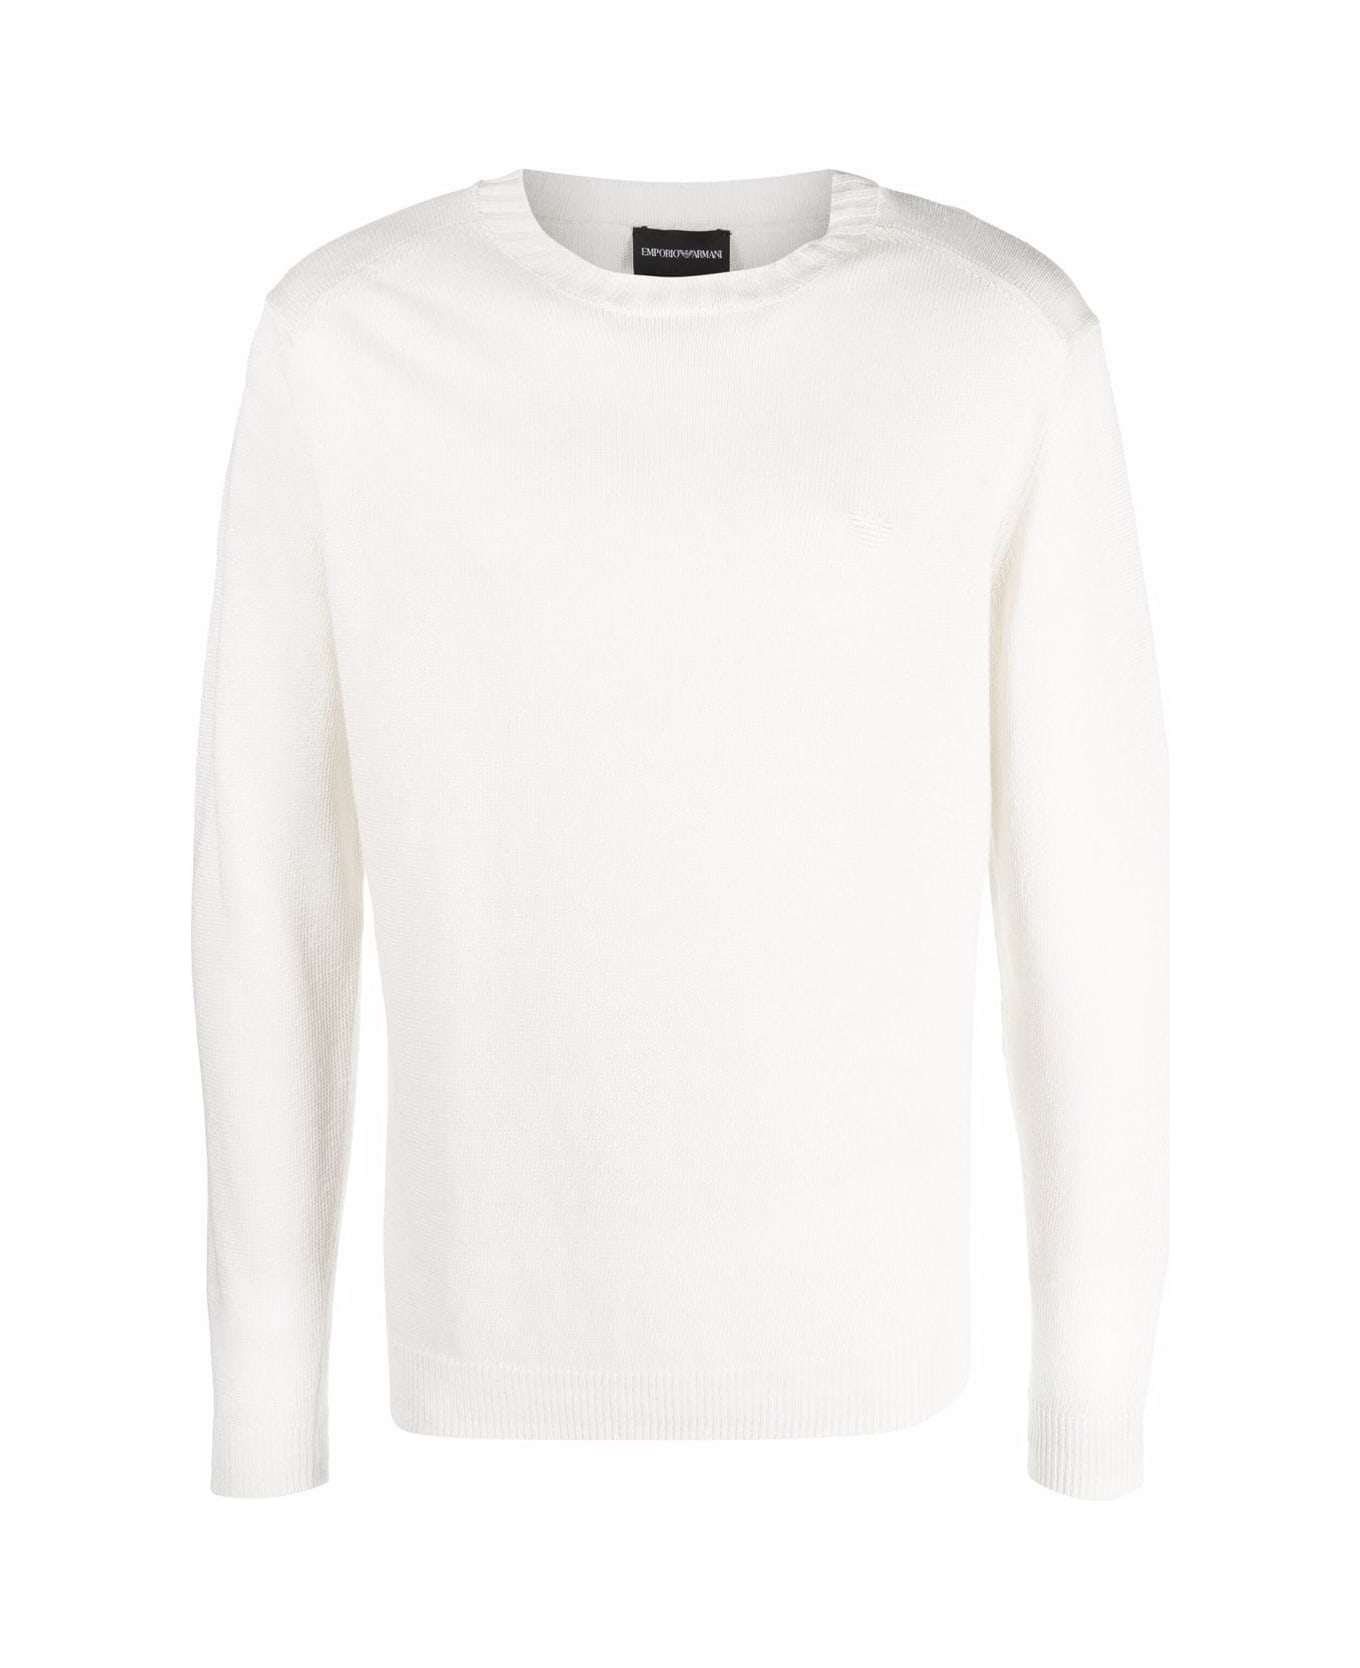 Emporio Armani Sweater - Hot White